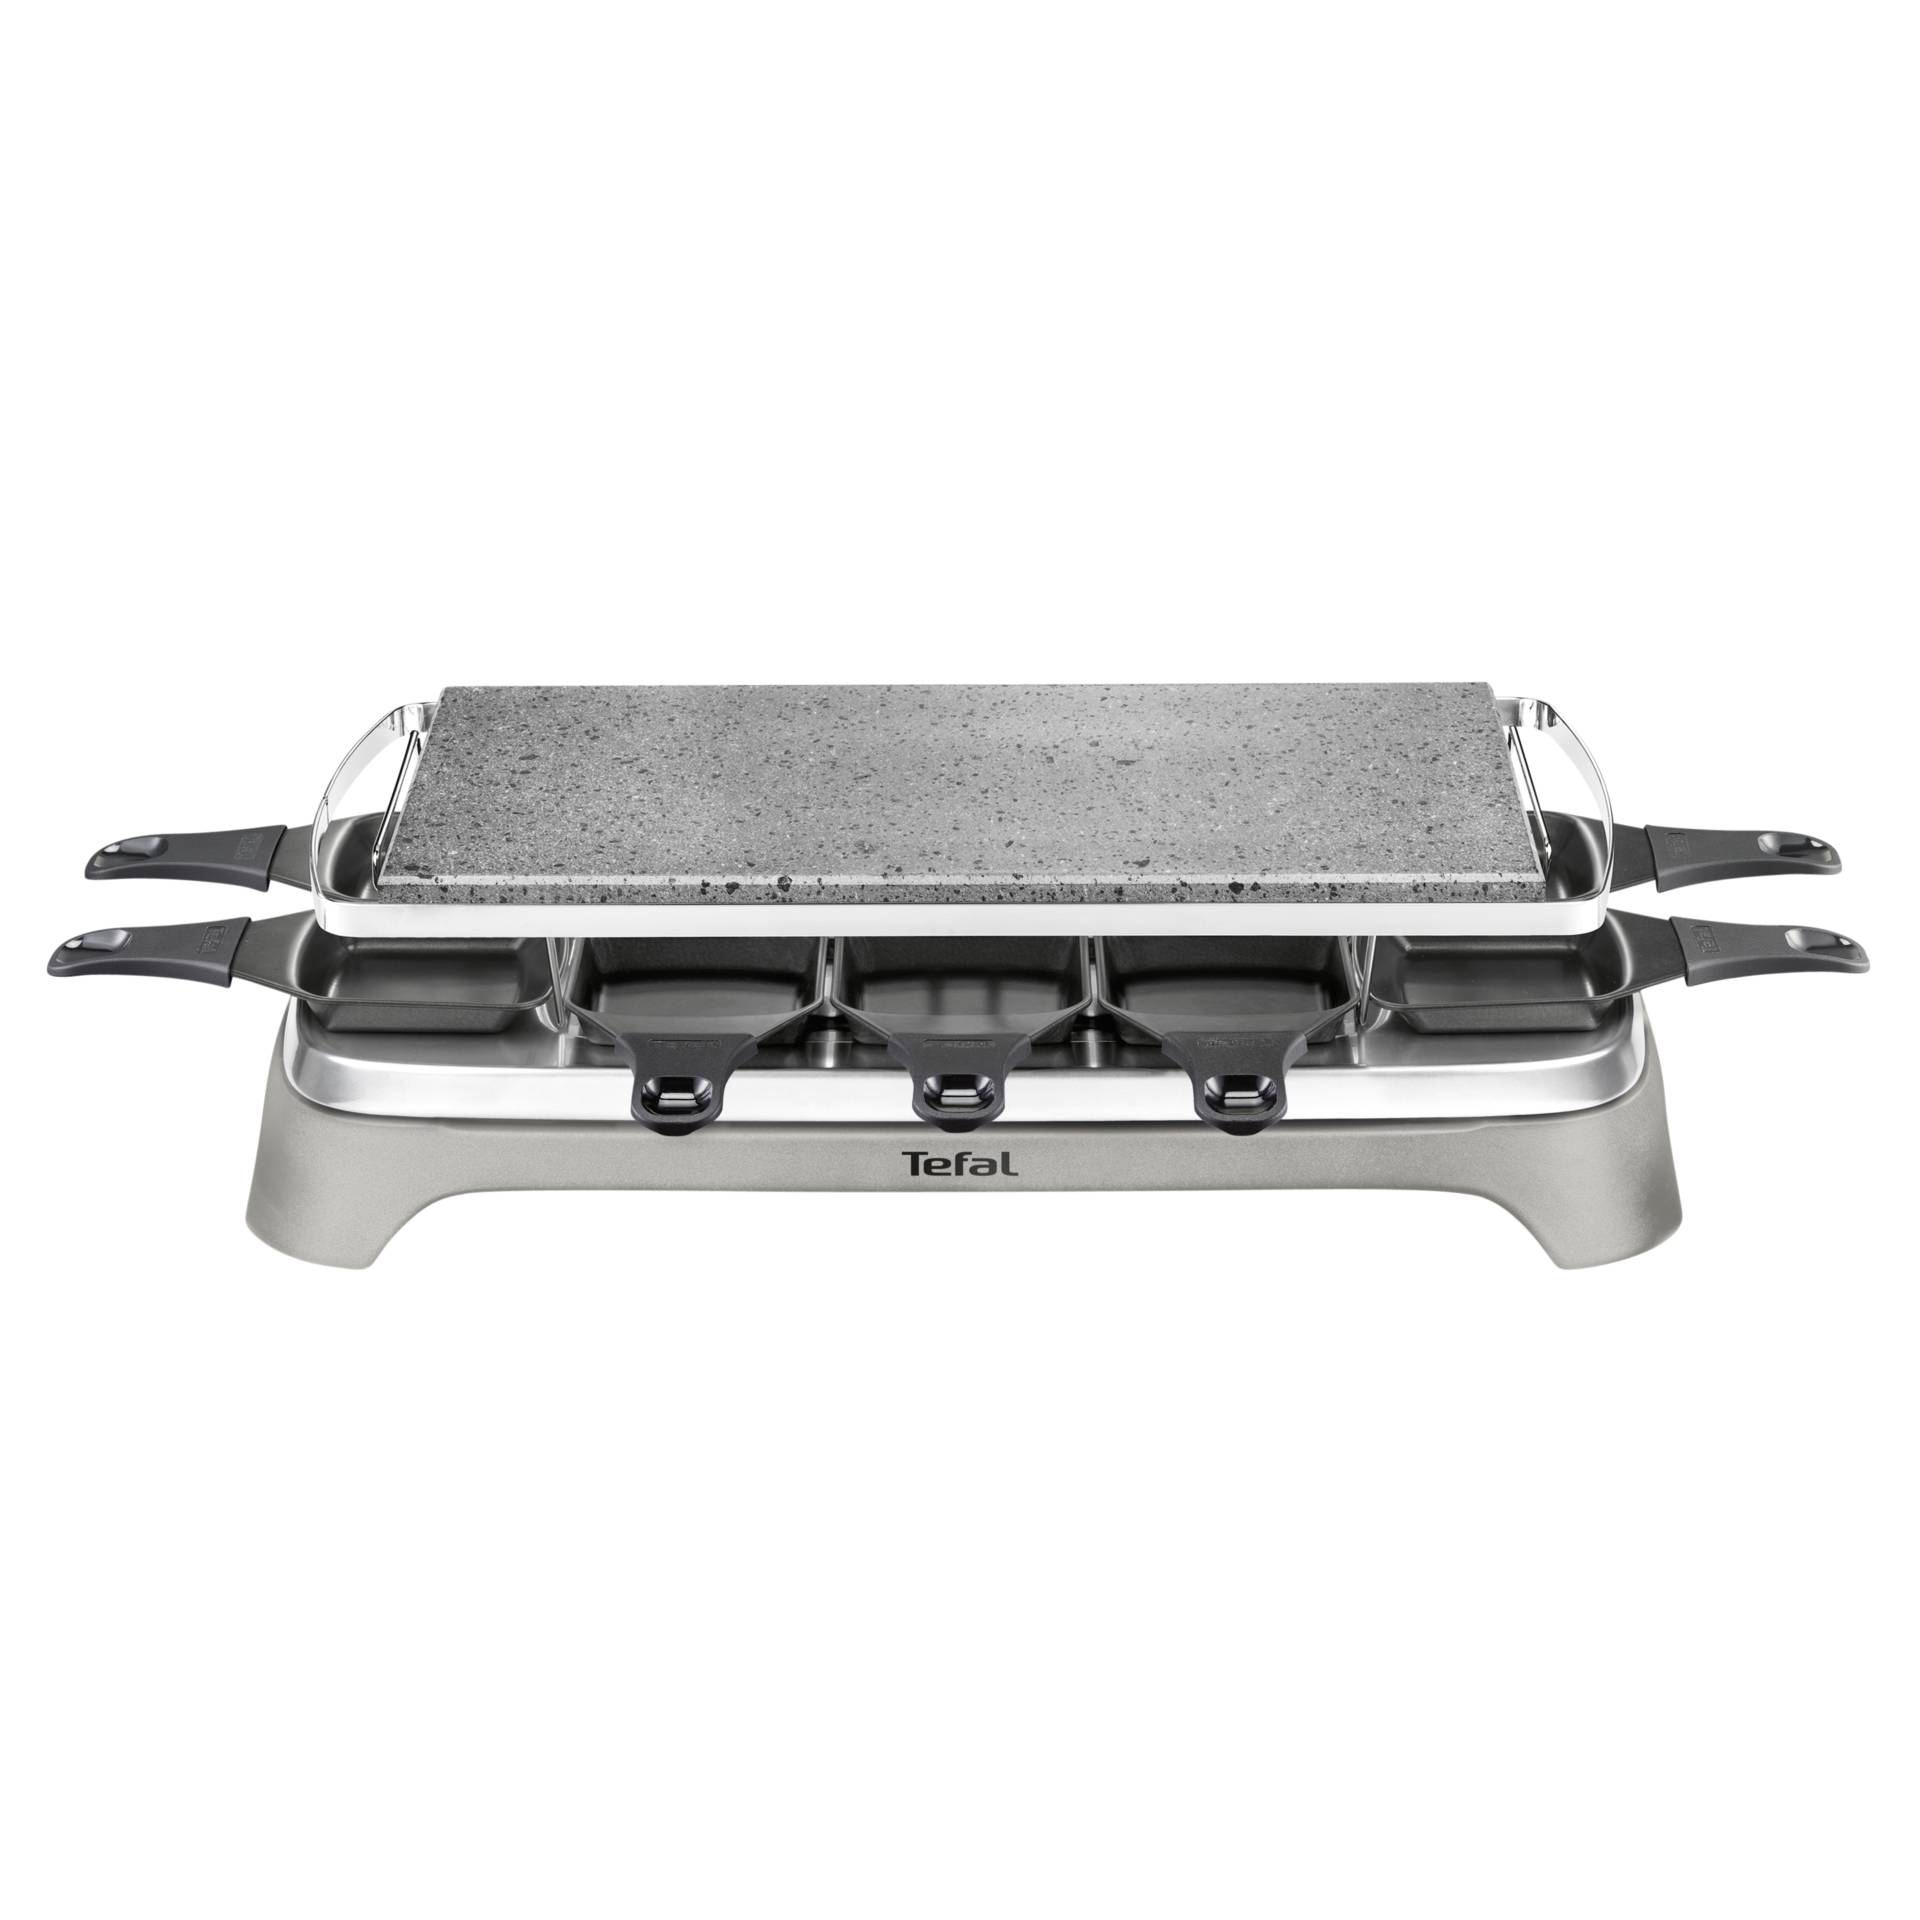 Tefal-Tefal PR 457 B Pierrade Raclette grey/stainless steel